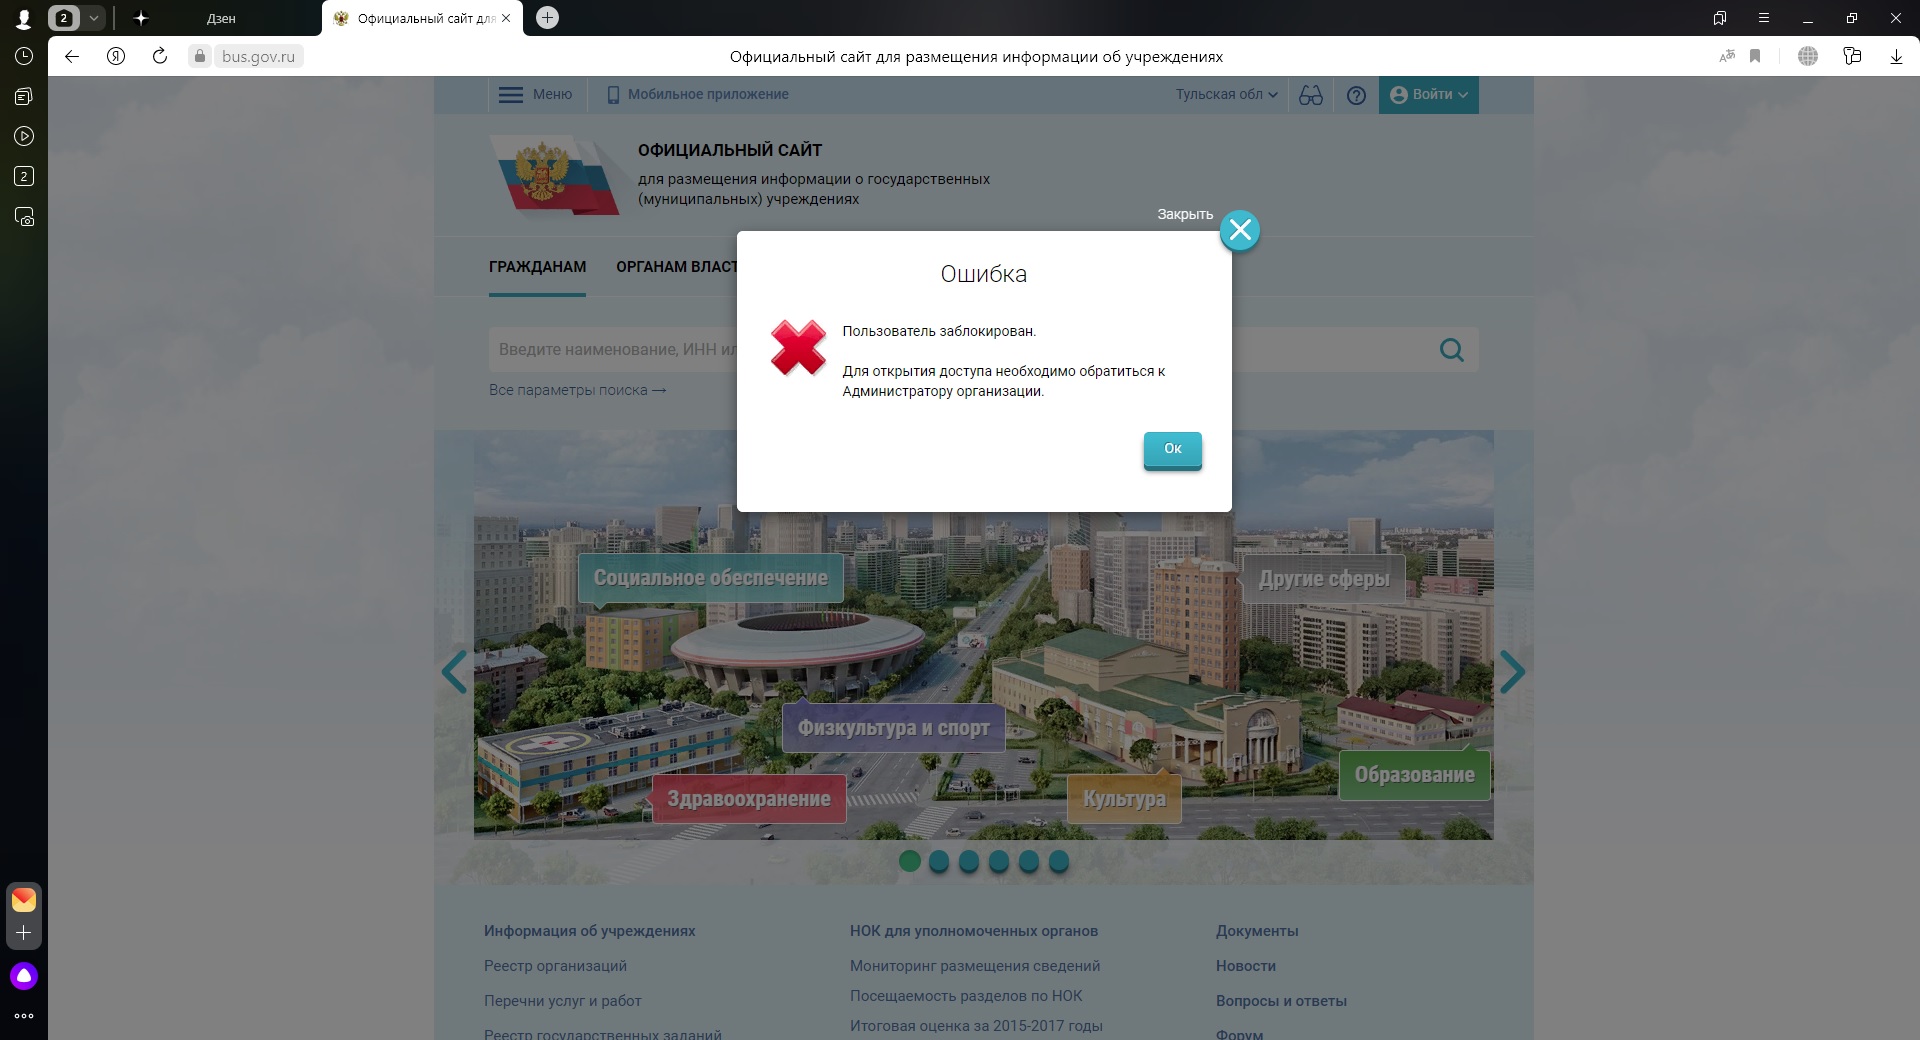 Https gisp gov ru pp719v2. Bus gov пользователь заблокирован обратитесь к администратору. Проверки гов ру. Бас гов не публикуется. Росреестр гов ру.